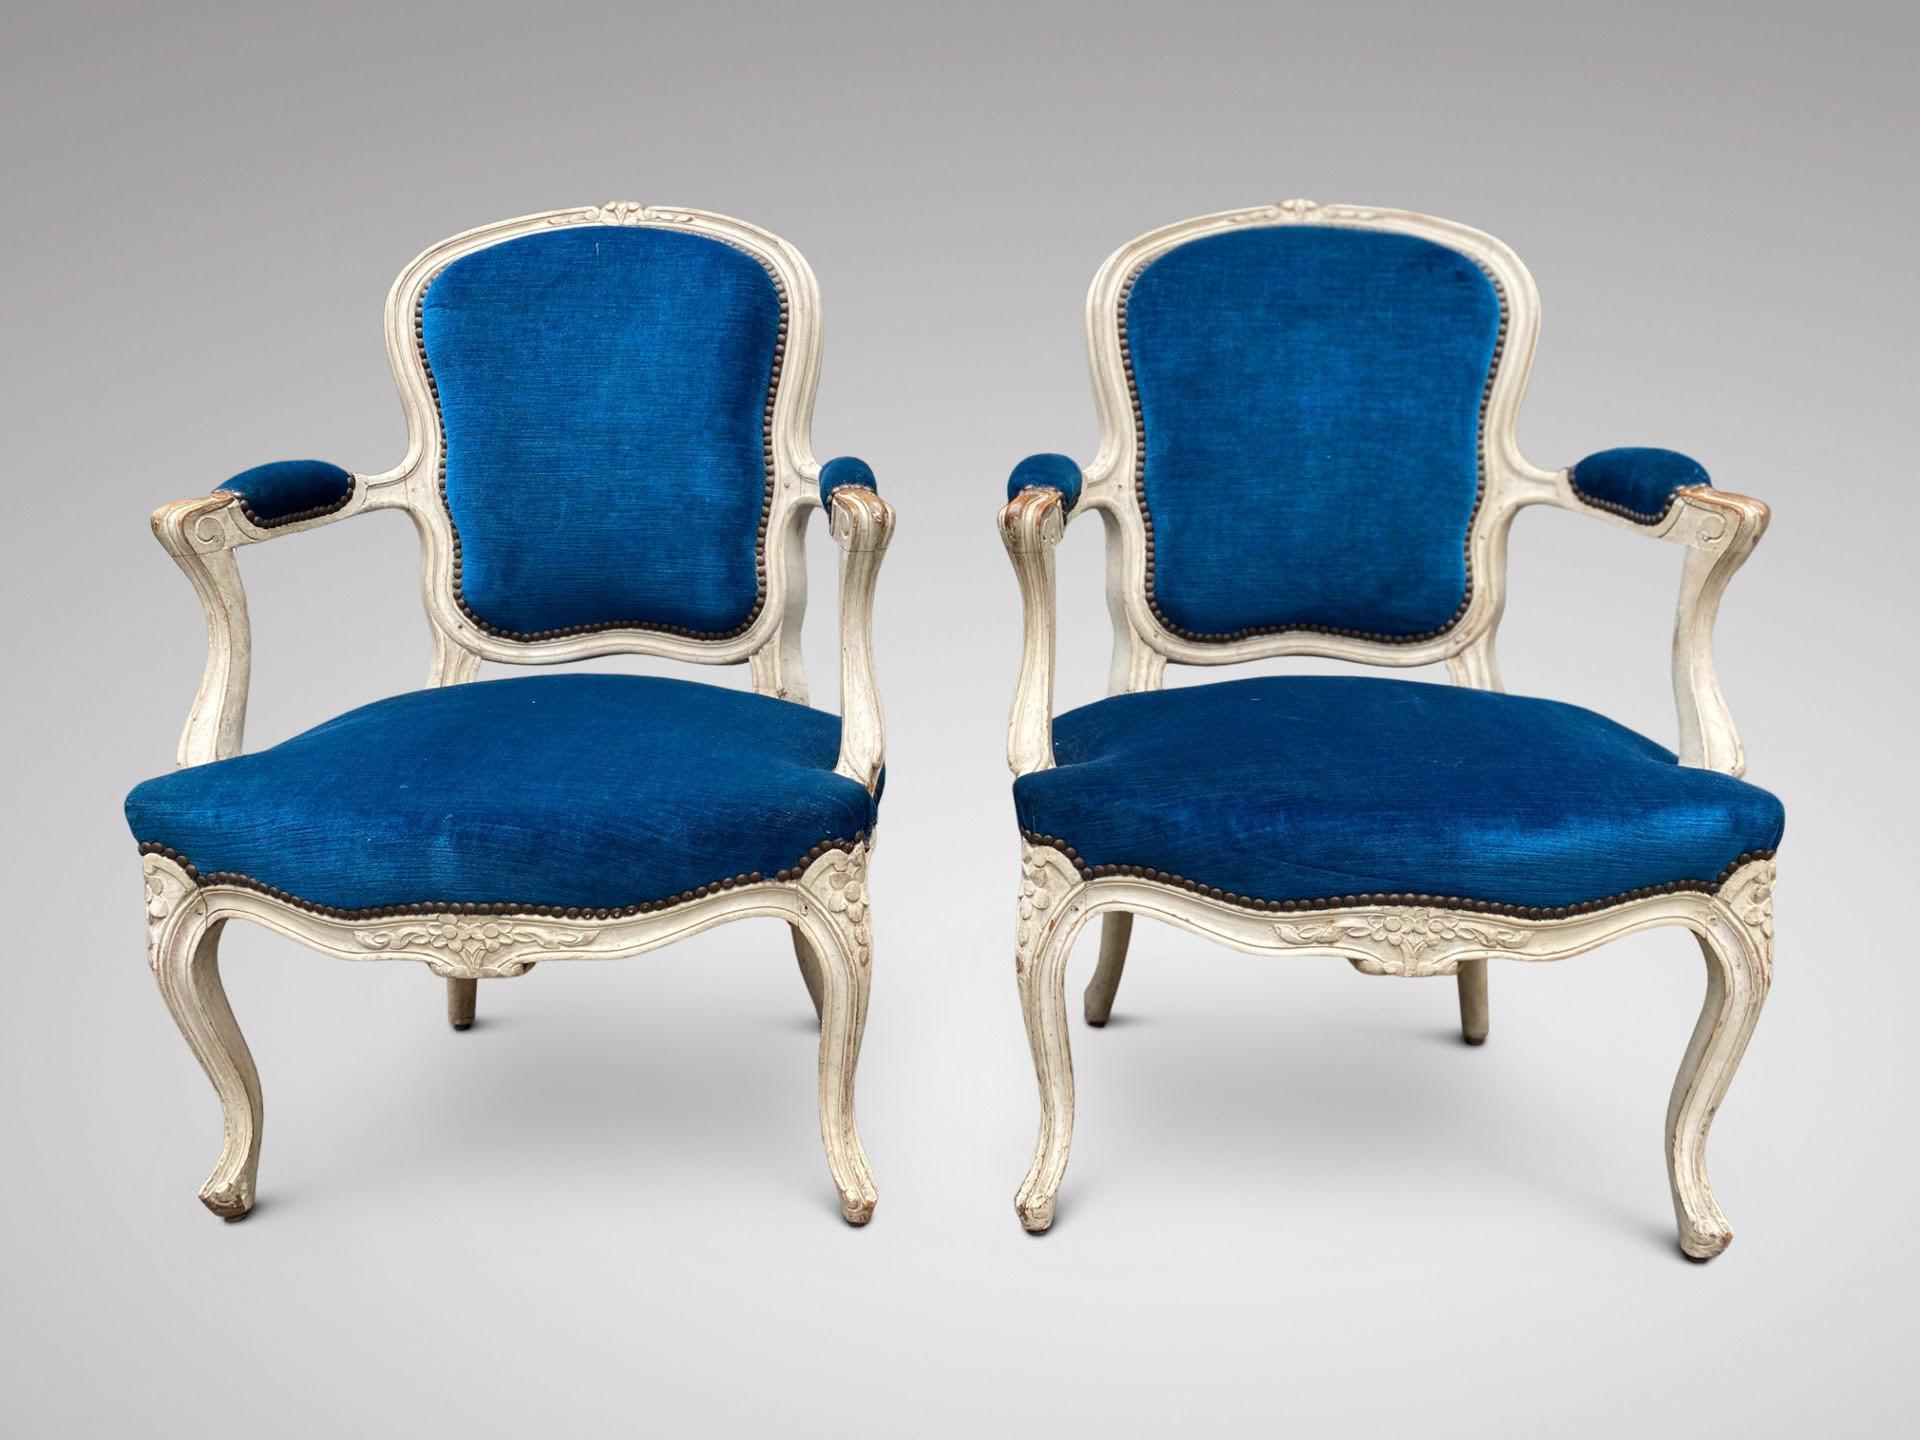 Ein dekoratives Paar französischer Louis-XV-Sessel aus patiniertem Nussbaumholz des späten 19. Jahrhunderts, gepolstert mit einem blauen Samtstoff, mit geschnitzten Verzierungen am Rahmen. Sehr bequeme Sessel. Tolle Patina.

Die Abmessungen